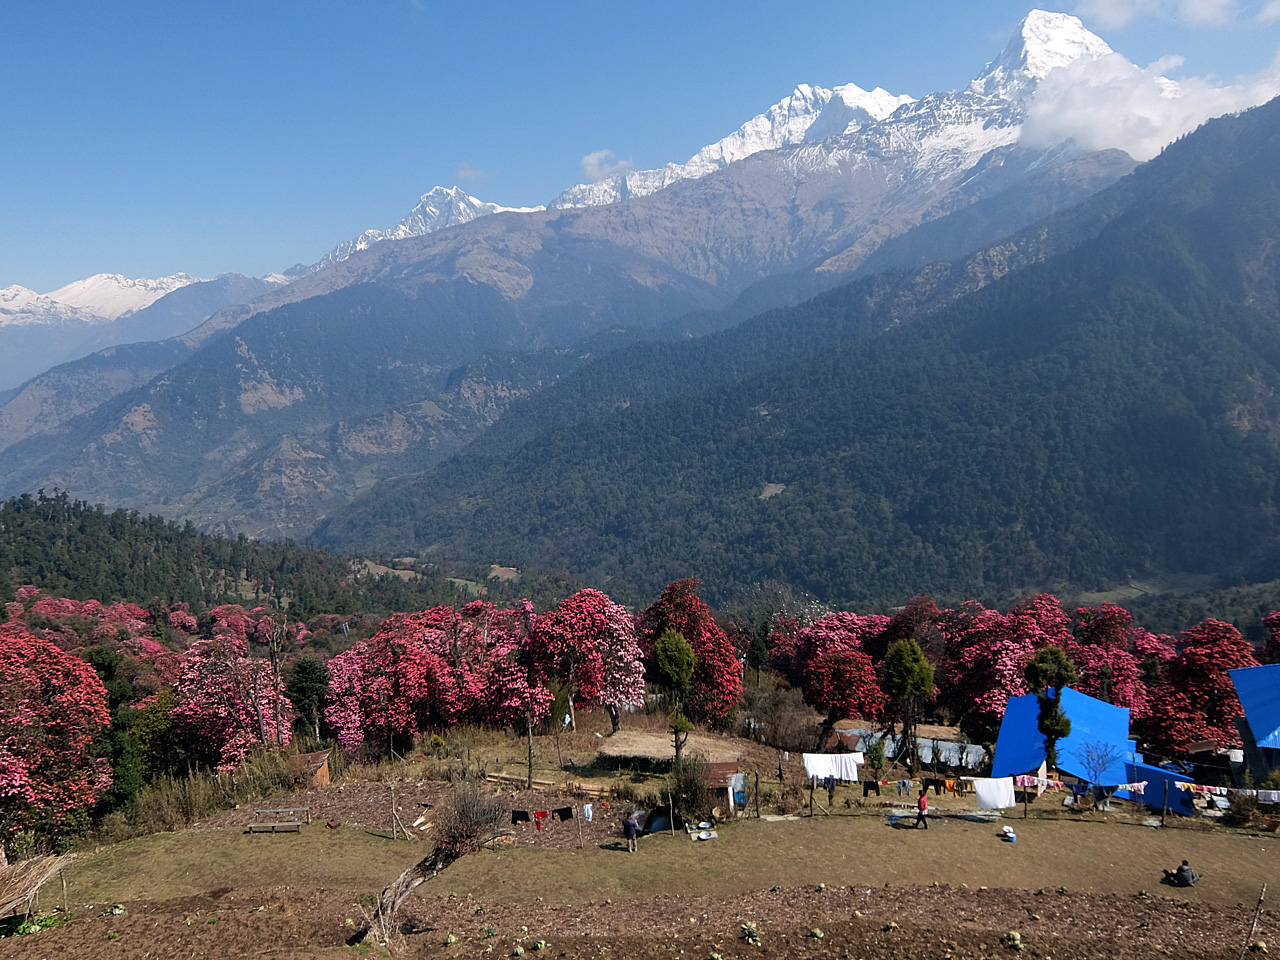 설산과 함께 살아가는 네팔 사람들. 네팔 국화인 랄리구라스가 흐드러지게 피어 있다.